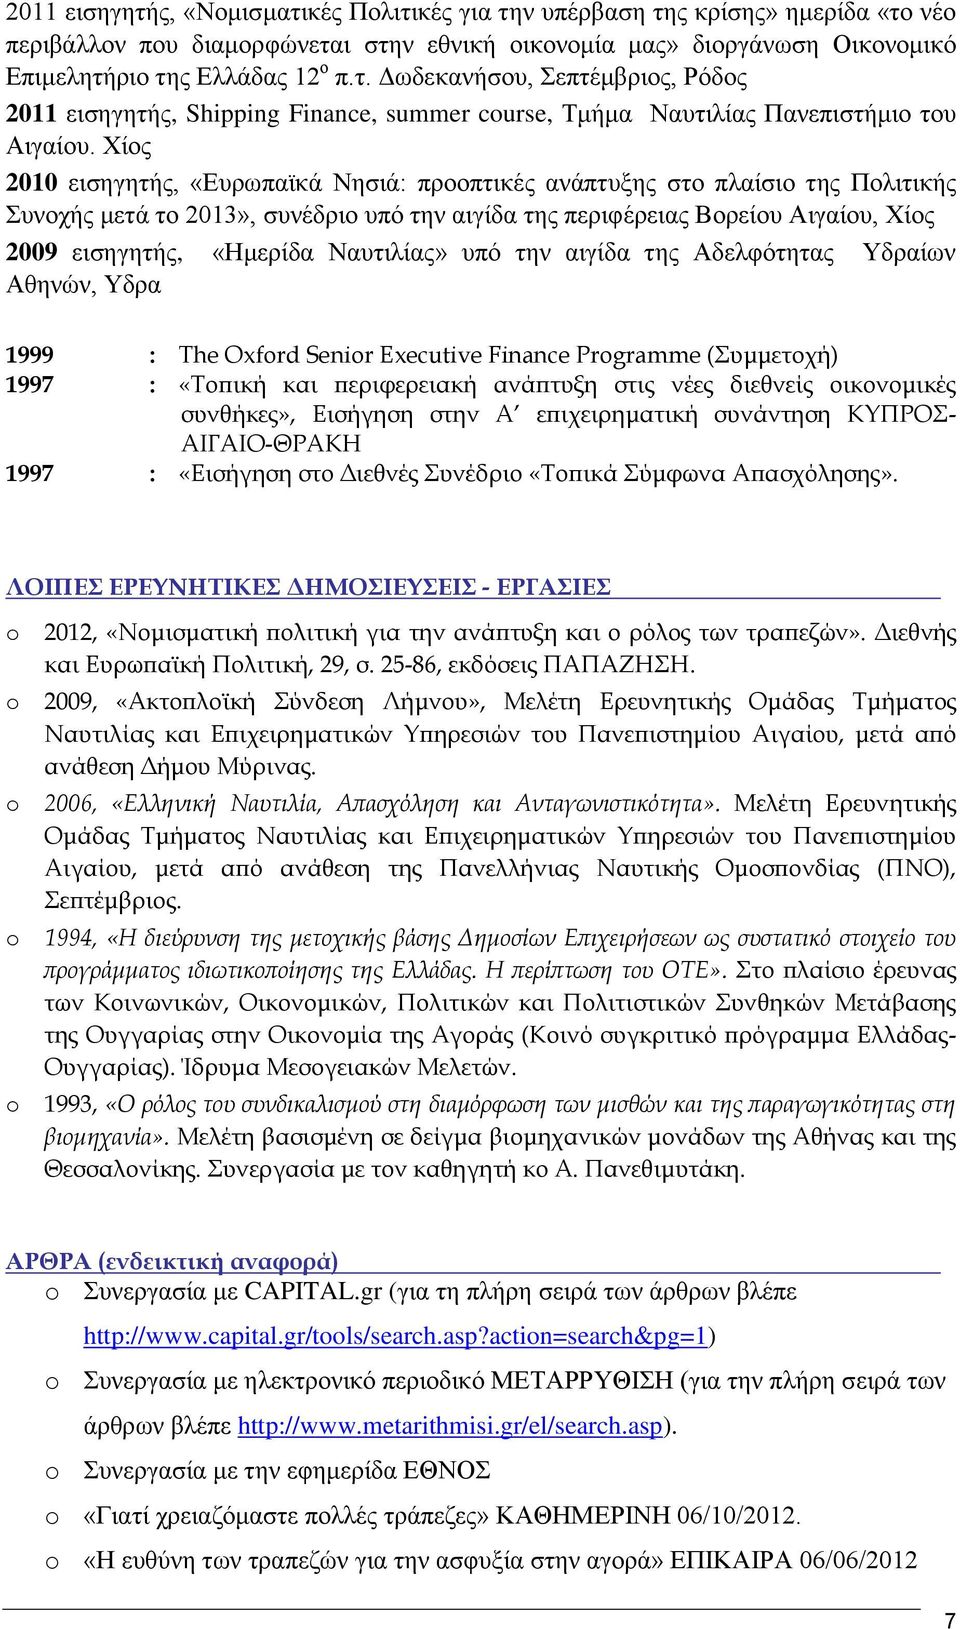 Ναυτιλίας» υπό την αιγίδα της Αδελφότητας Υδραίων Αθηνών, Υδρα 1999 : The Oxfrd Senir Executive Finance Prgramme (Συμμετοχή) 1997 : «Τοπική και περιφερειακή ανάπτυξη στις νέες διεθνείς οικονομικές